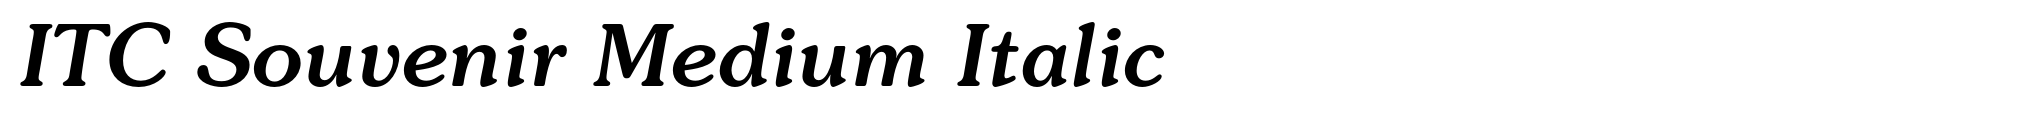 ITC Souvenir Medium Italic image